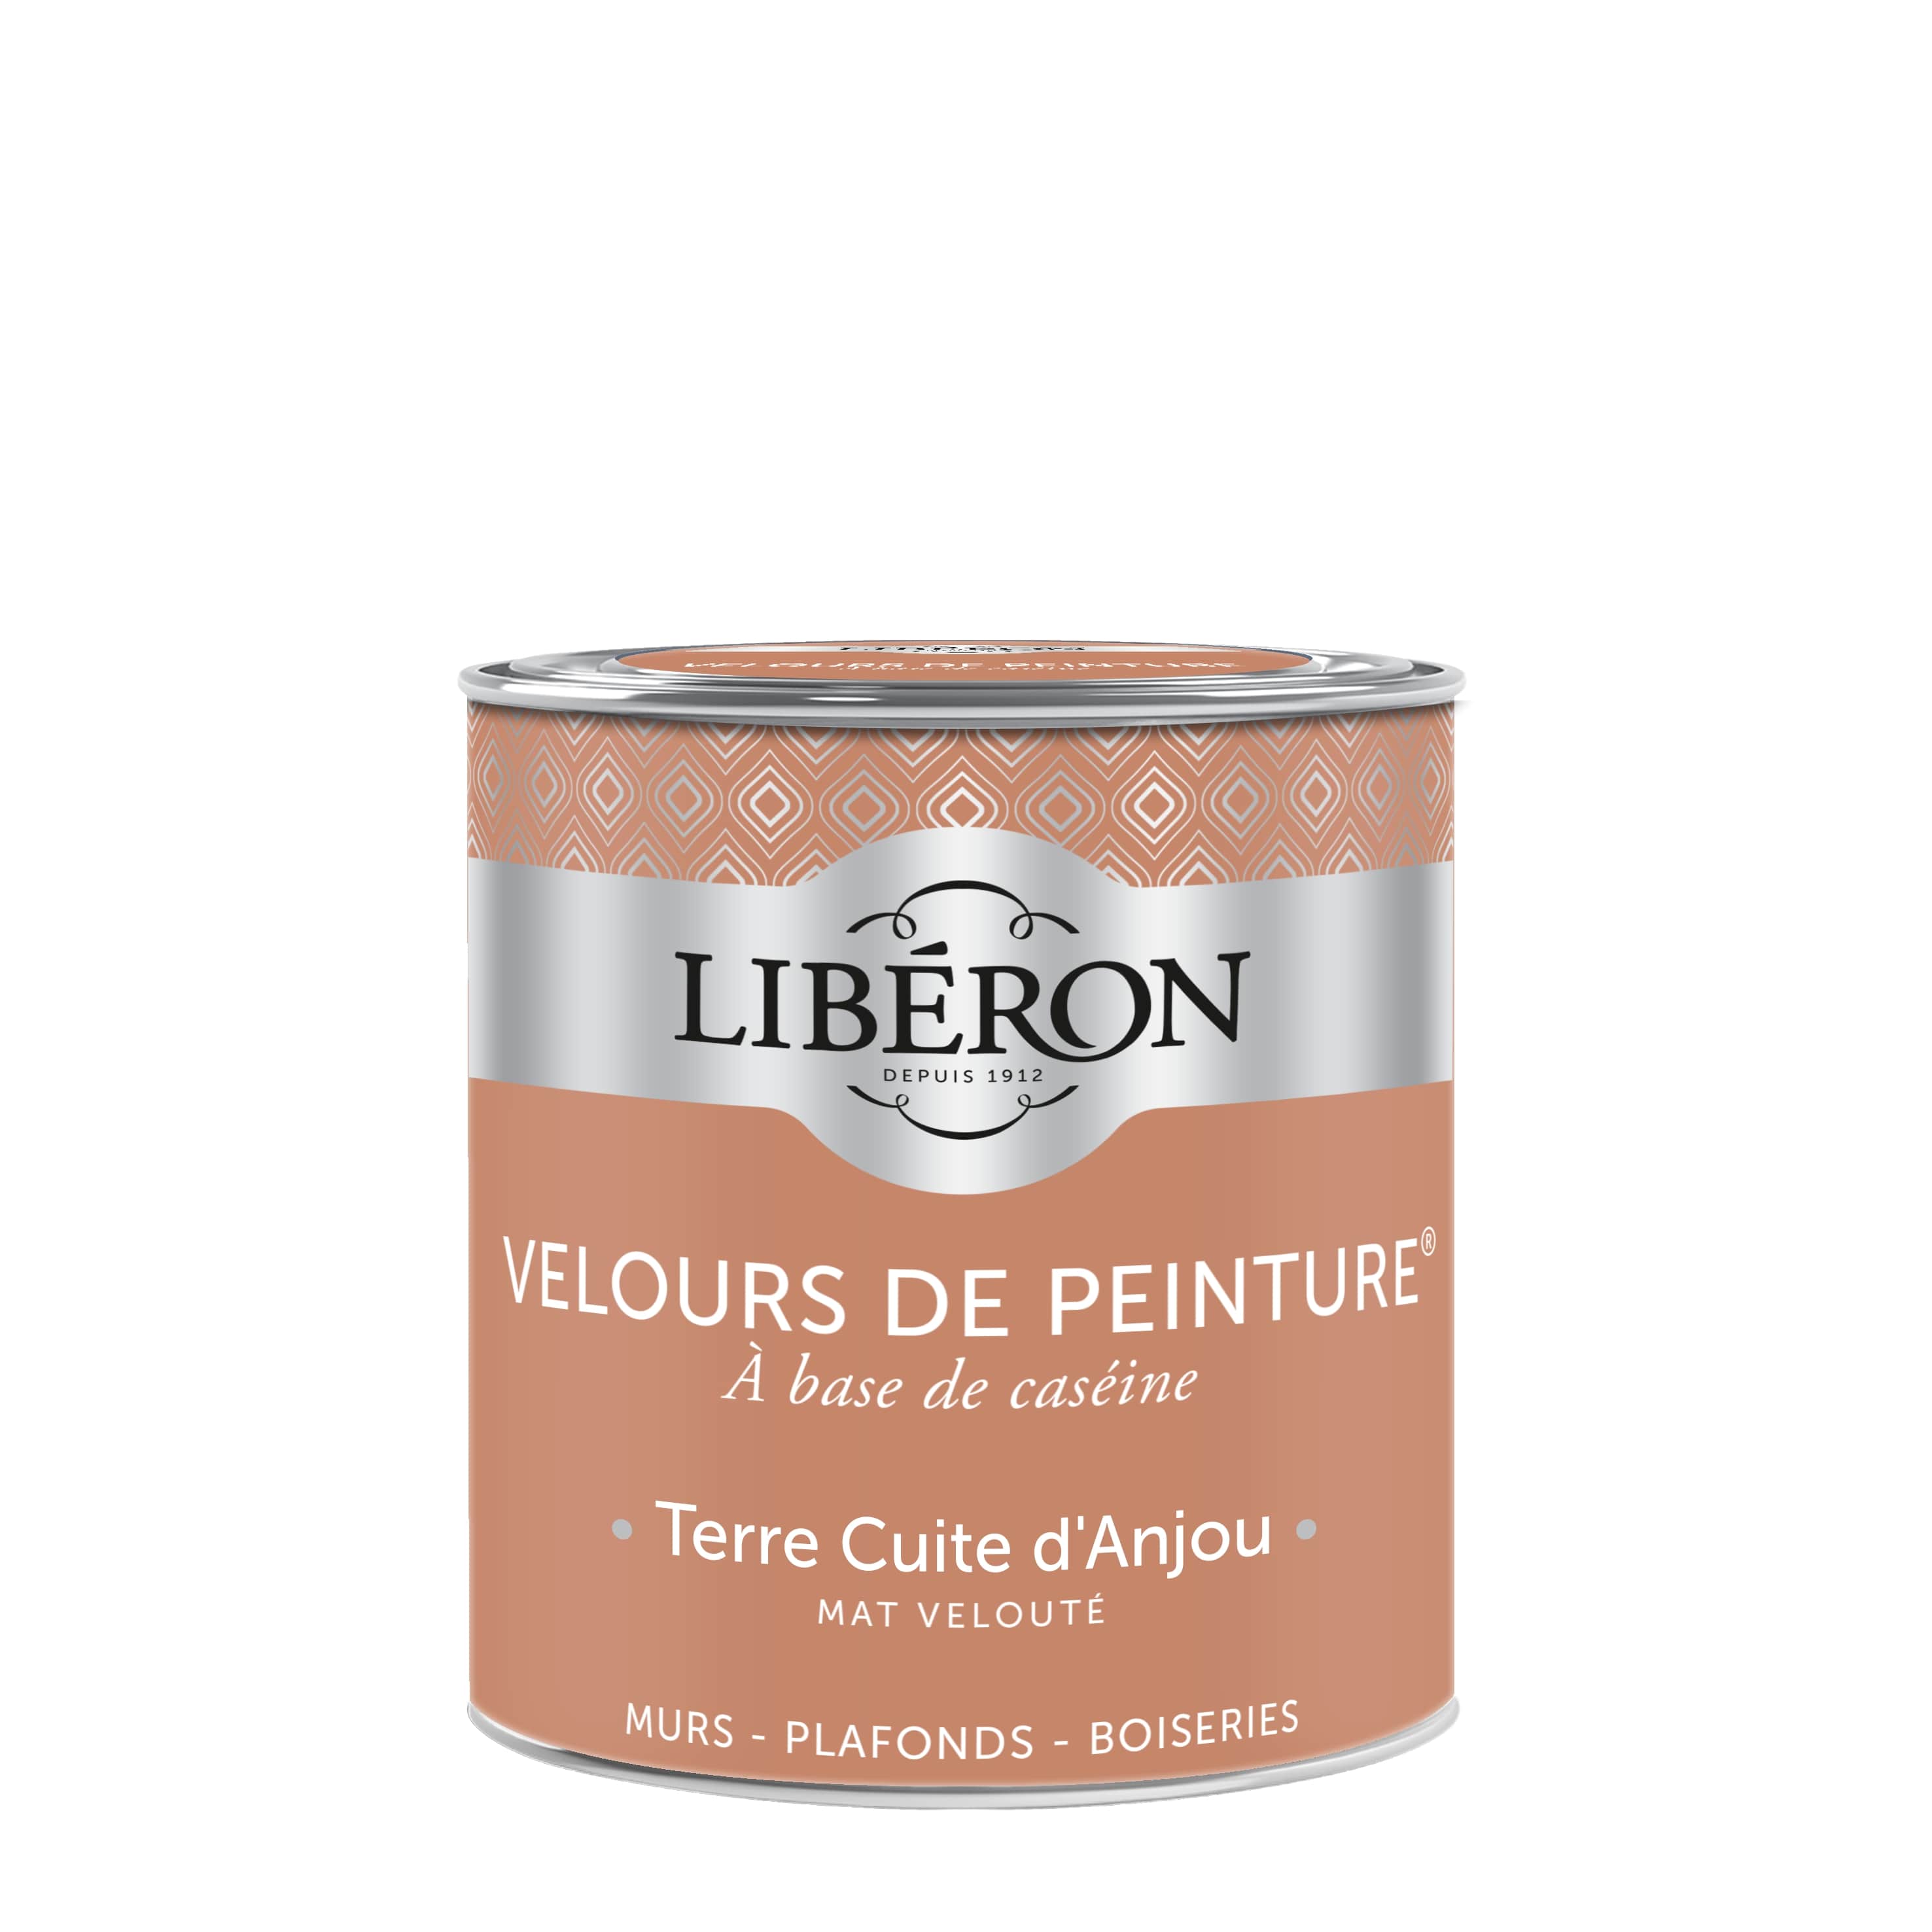 VELOURS DE PEINTURE ® - Couleur Terre Cuite d'Anjou - Libéron